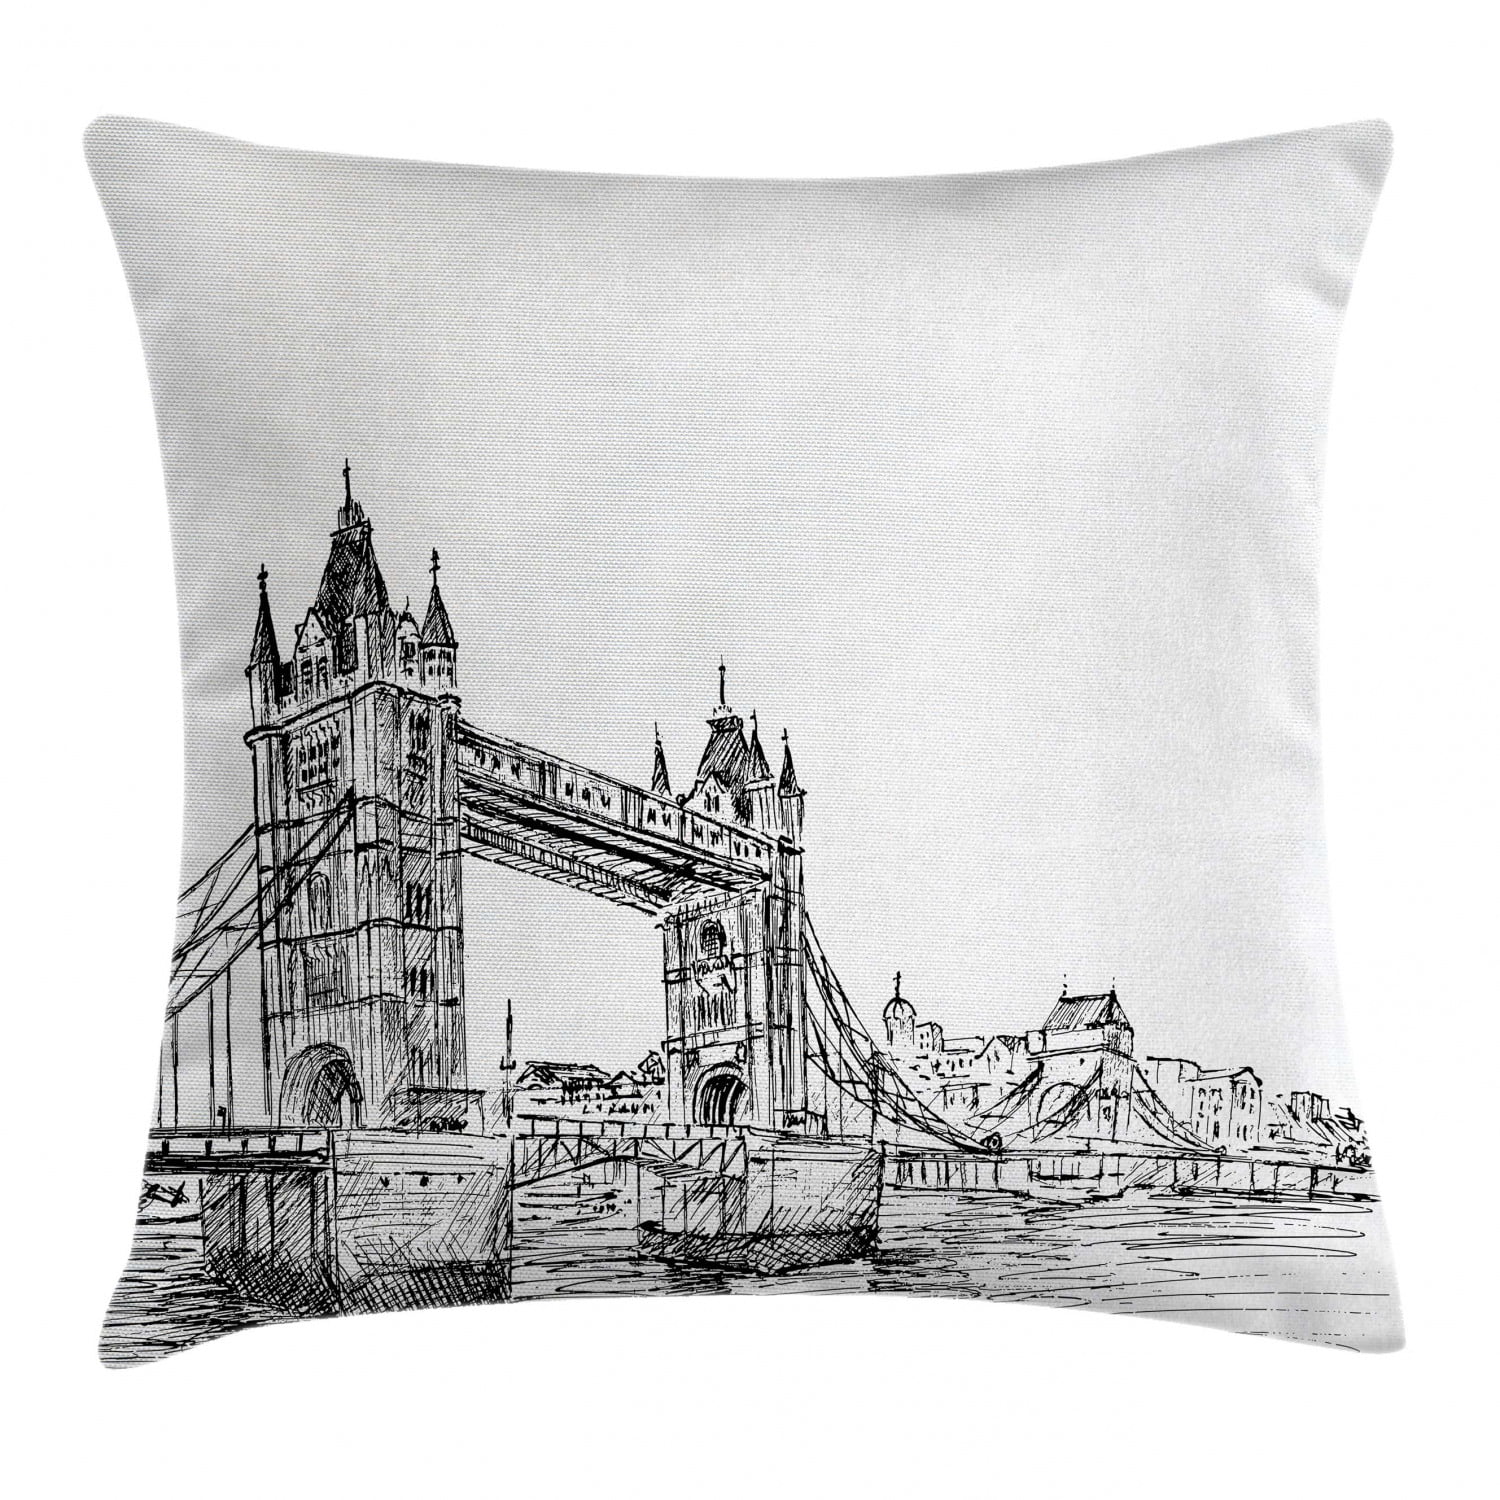 Building London Bridge 18inch Pillow Covers Cotton Linen Decor Pillow Cases New 